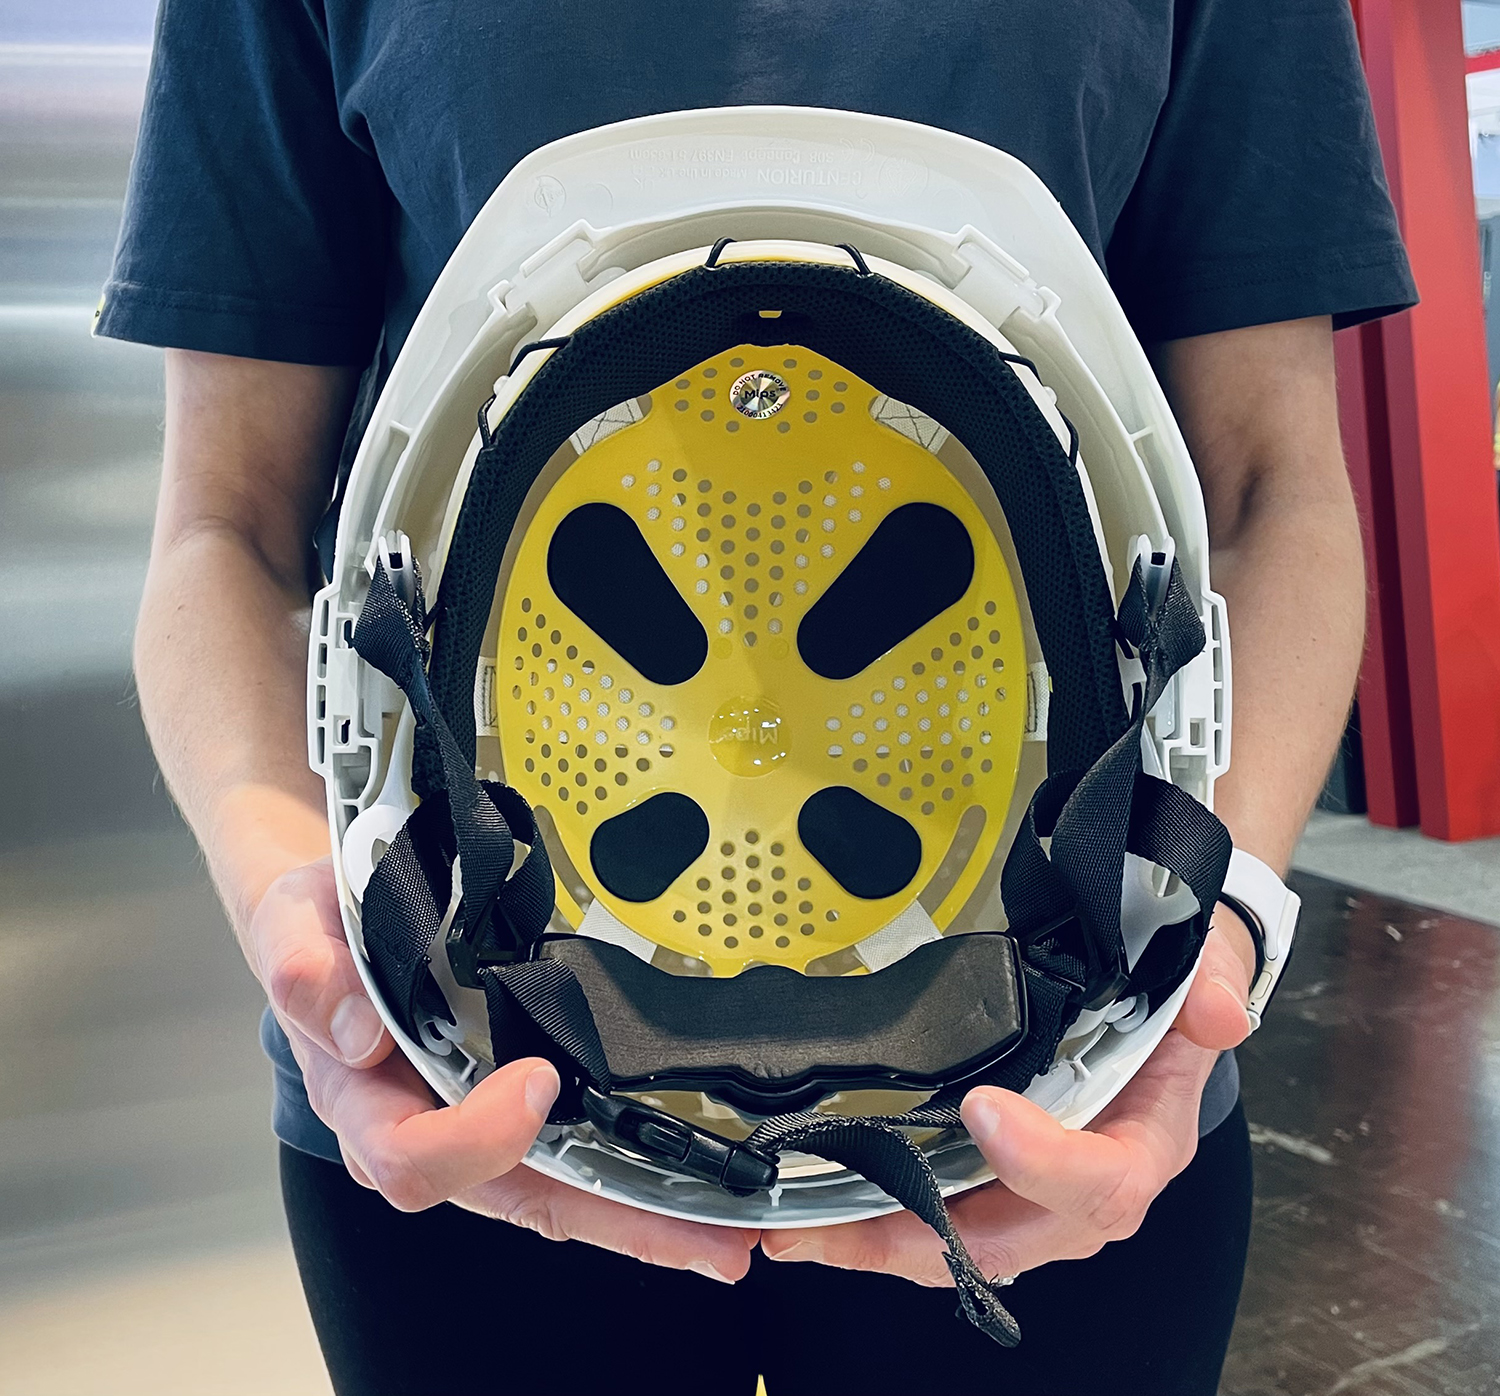 Centurion Concept Safety Helmet